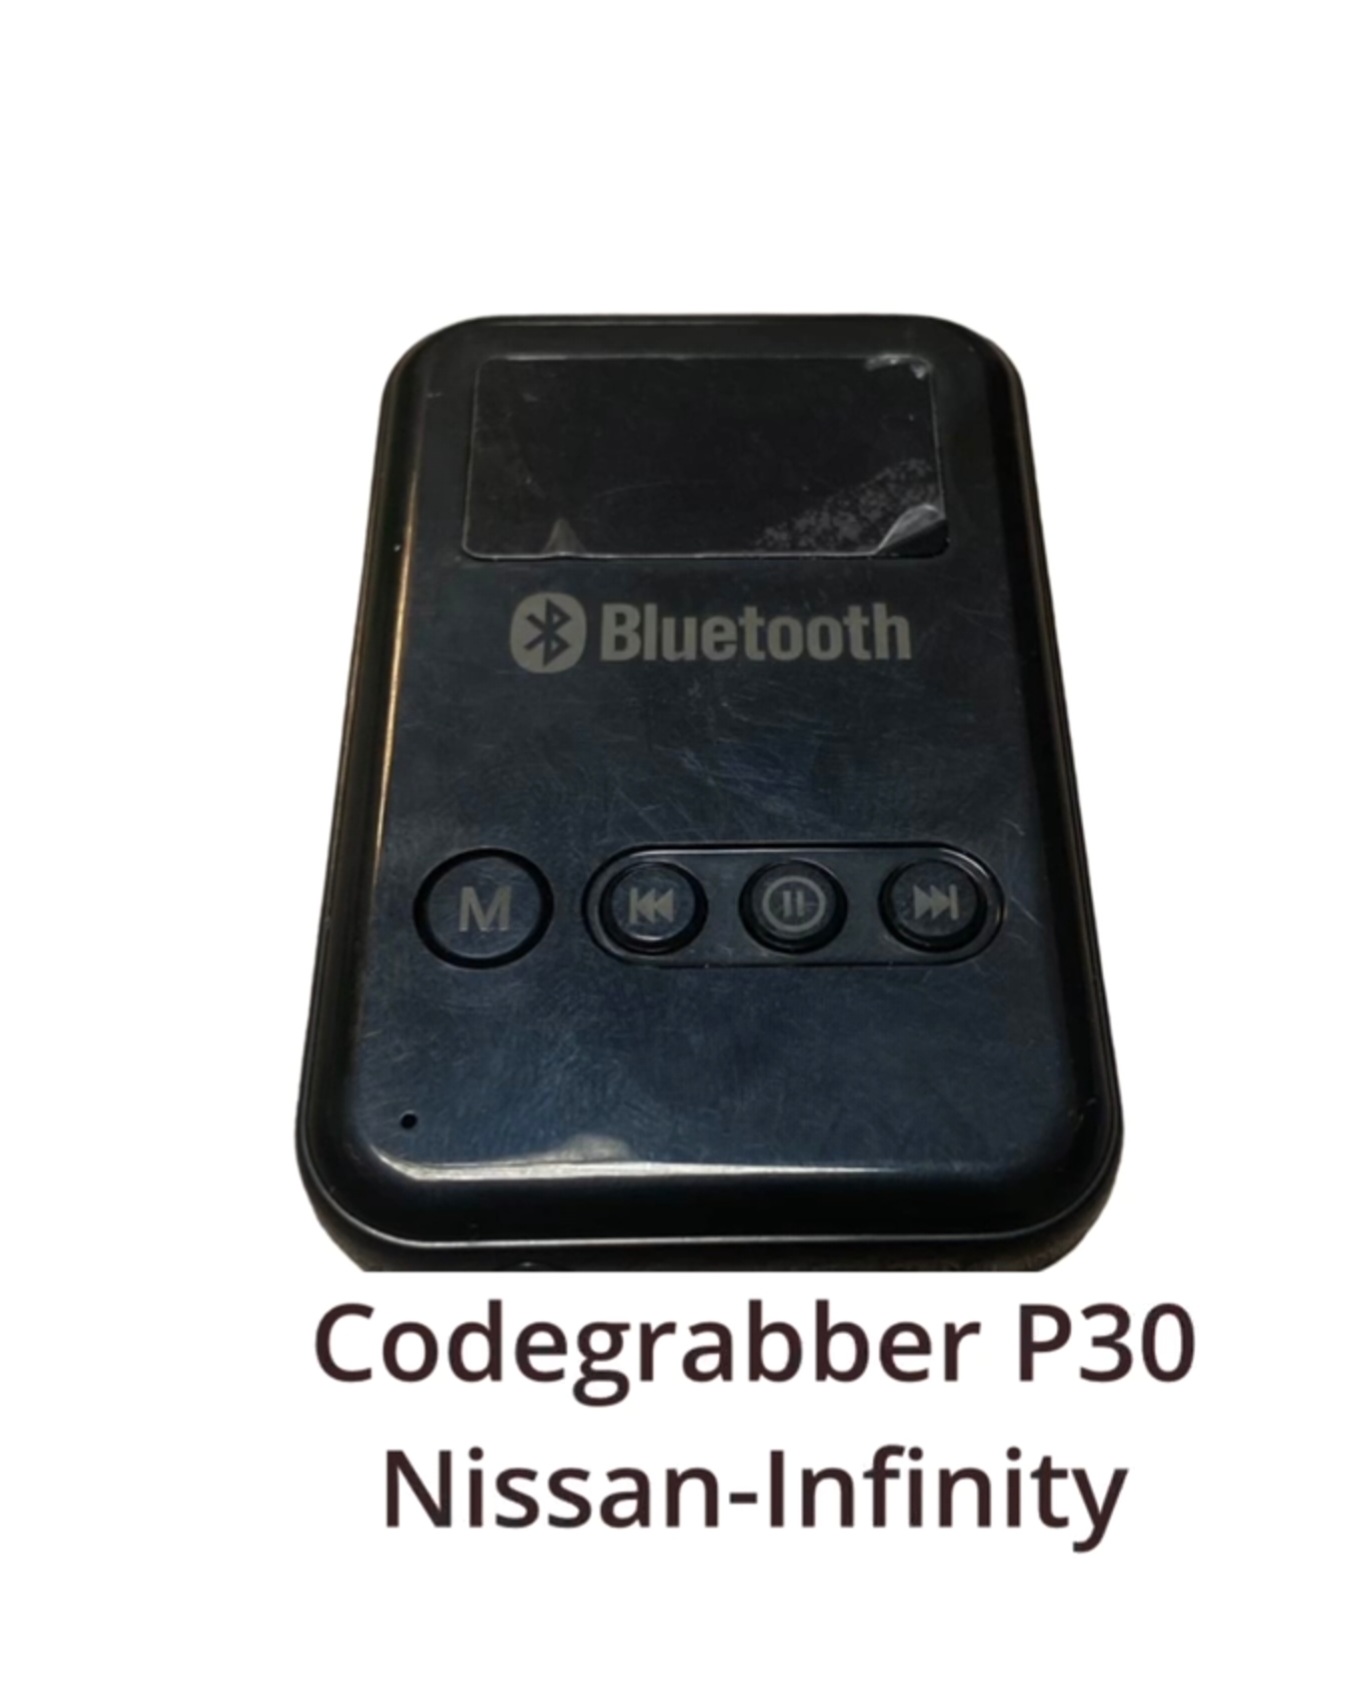 Codegrabber P30 Keyless Infinfti Nissan! Mercedes X Class 2019 title image